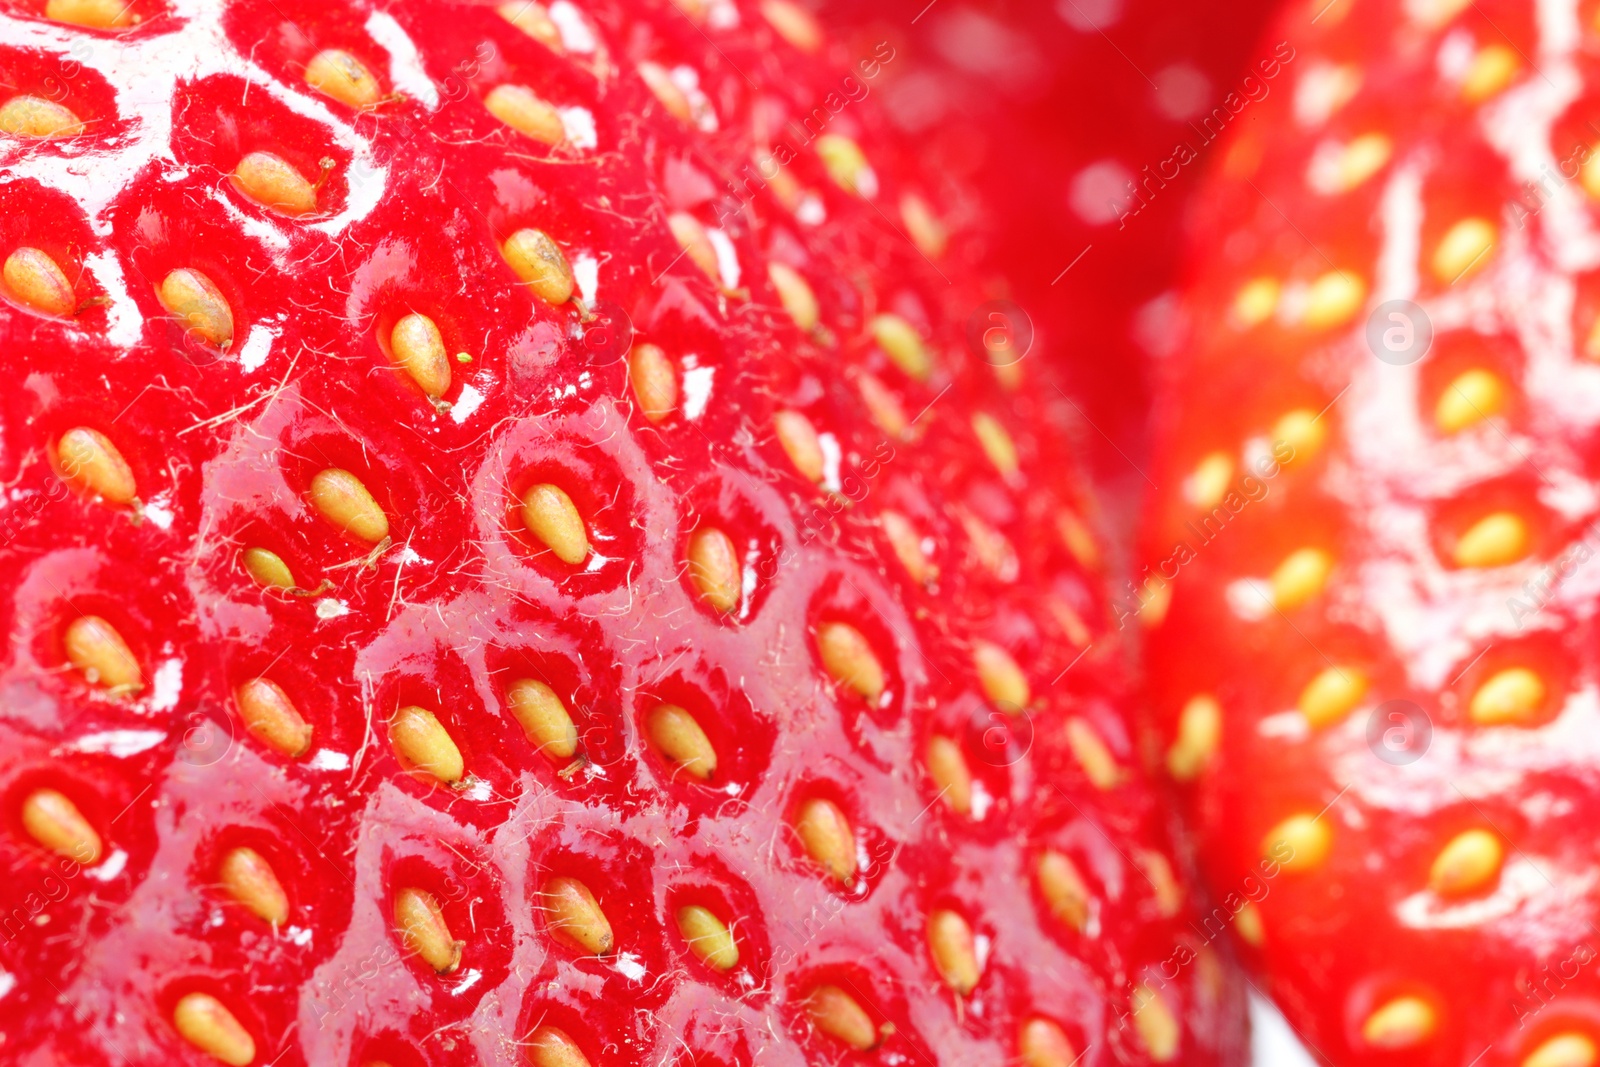 Photo of Tasty fresh ripe strawberries as background, macro view. Fresh berries